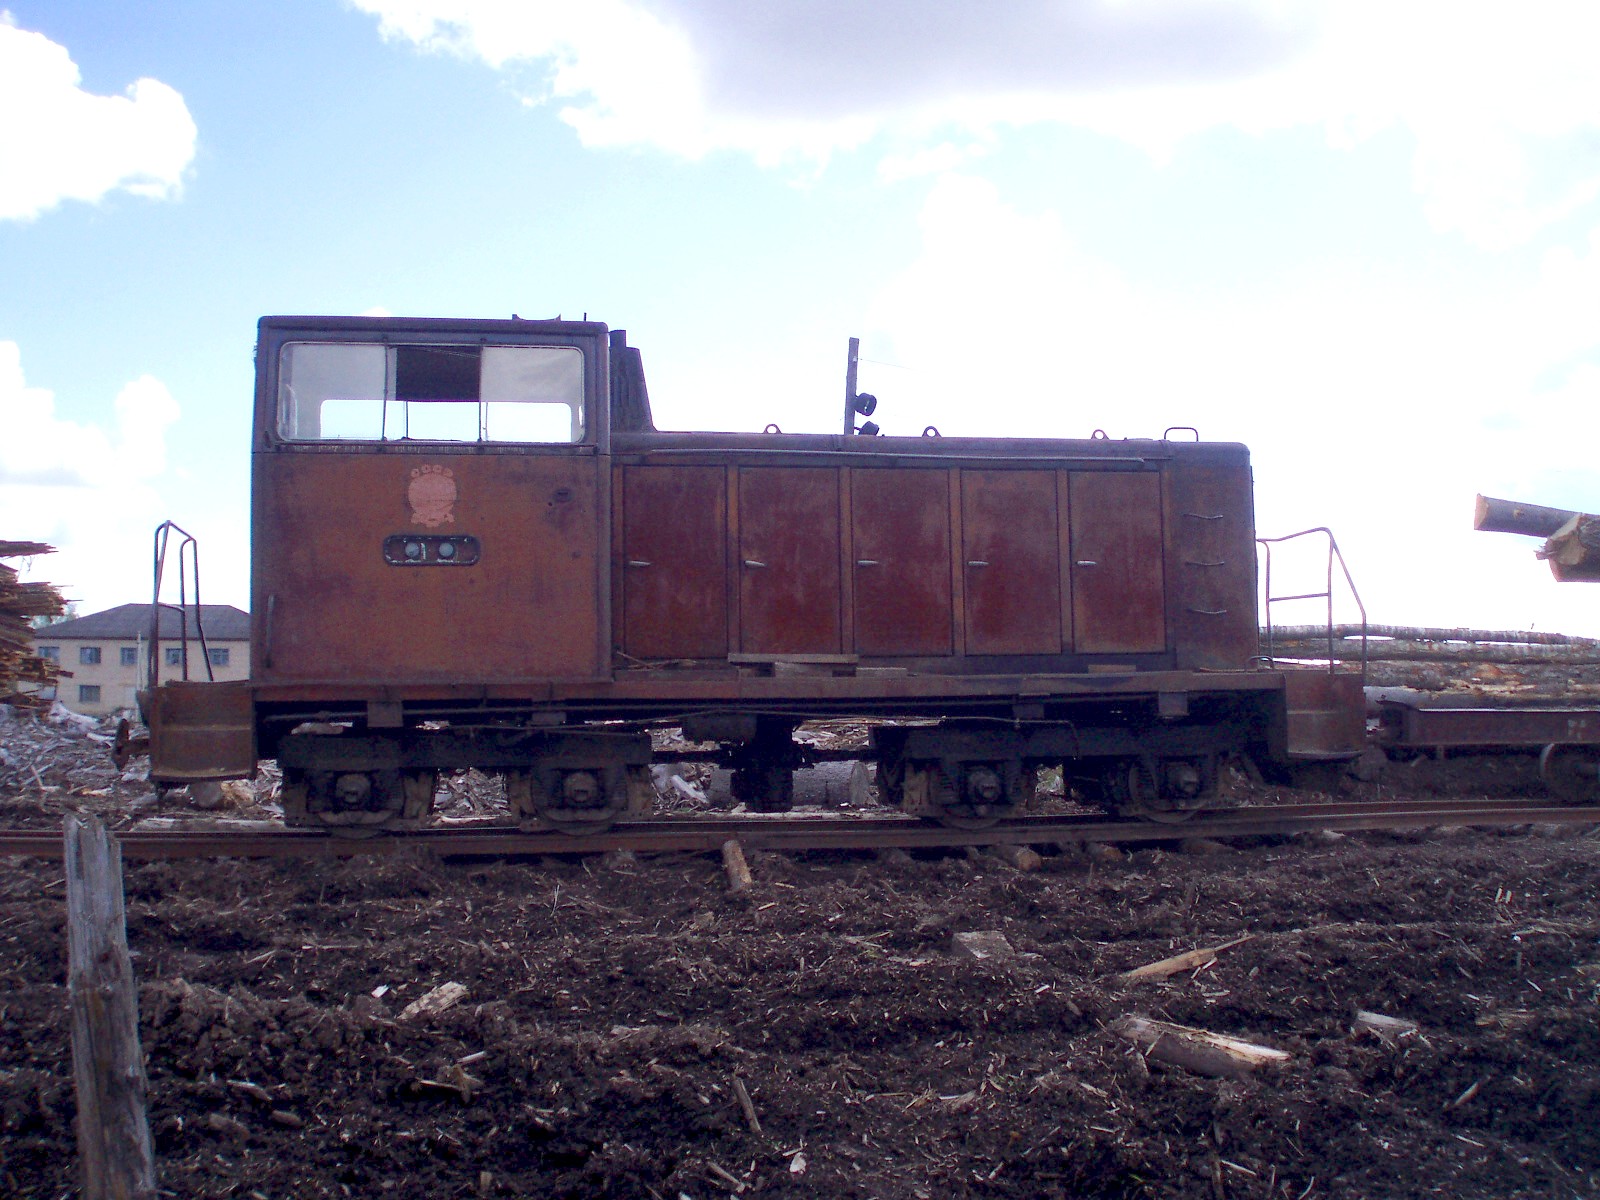 Смородинская узкоколейная железная дорога   — фотографии, сделанные в 2007 году (часть 4)